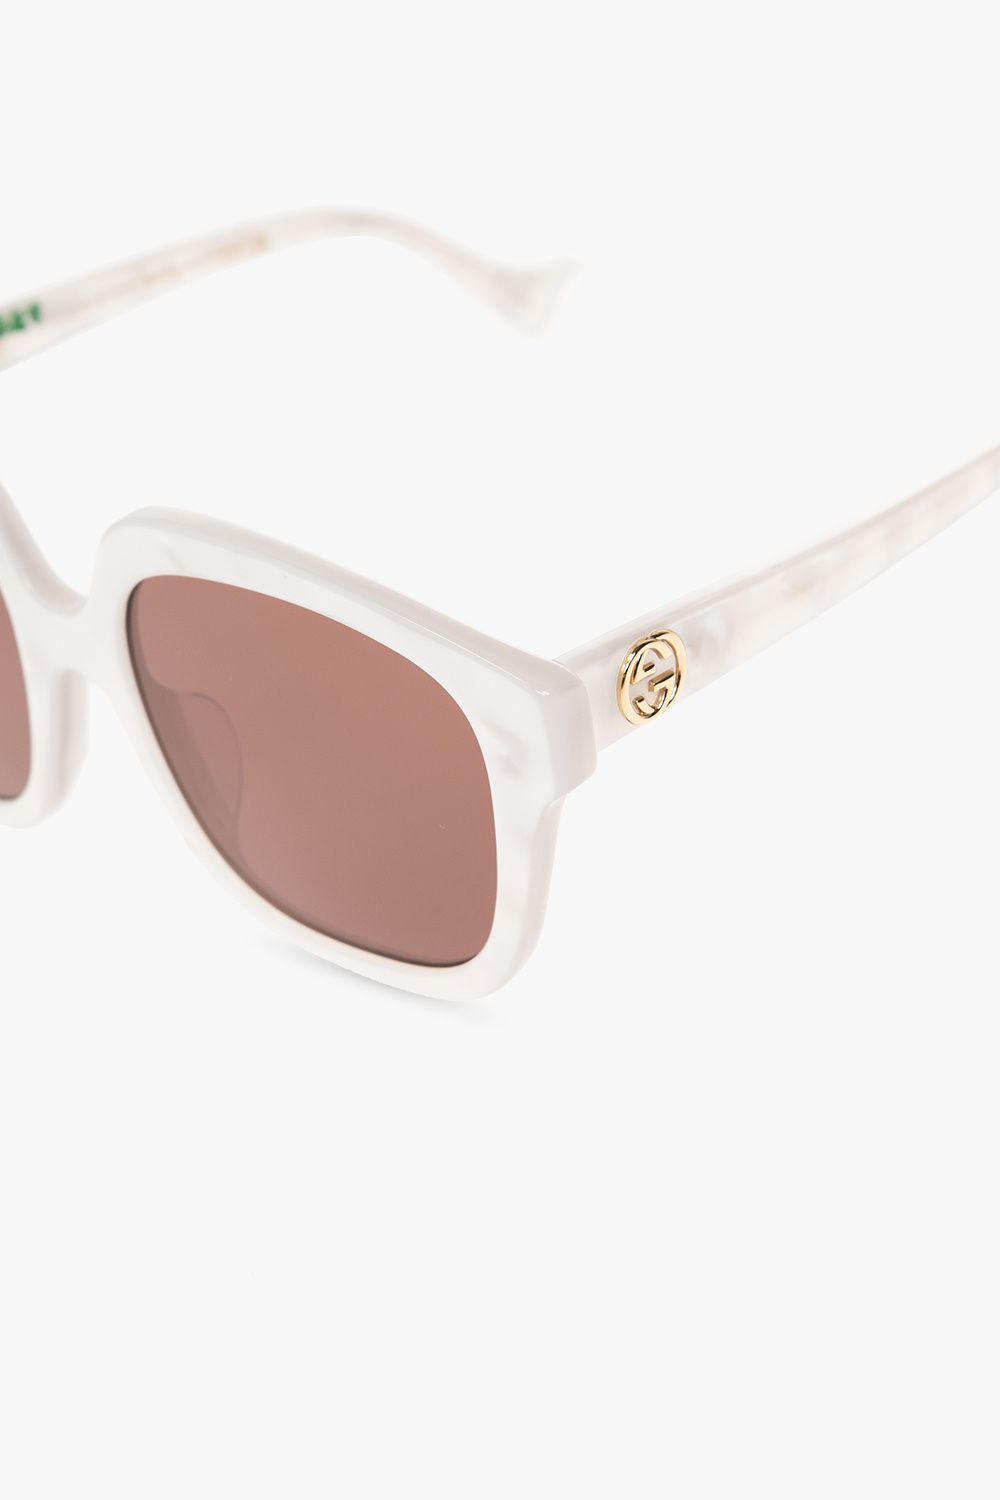 Gucci mirror sunglasses